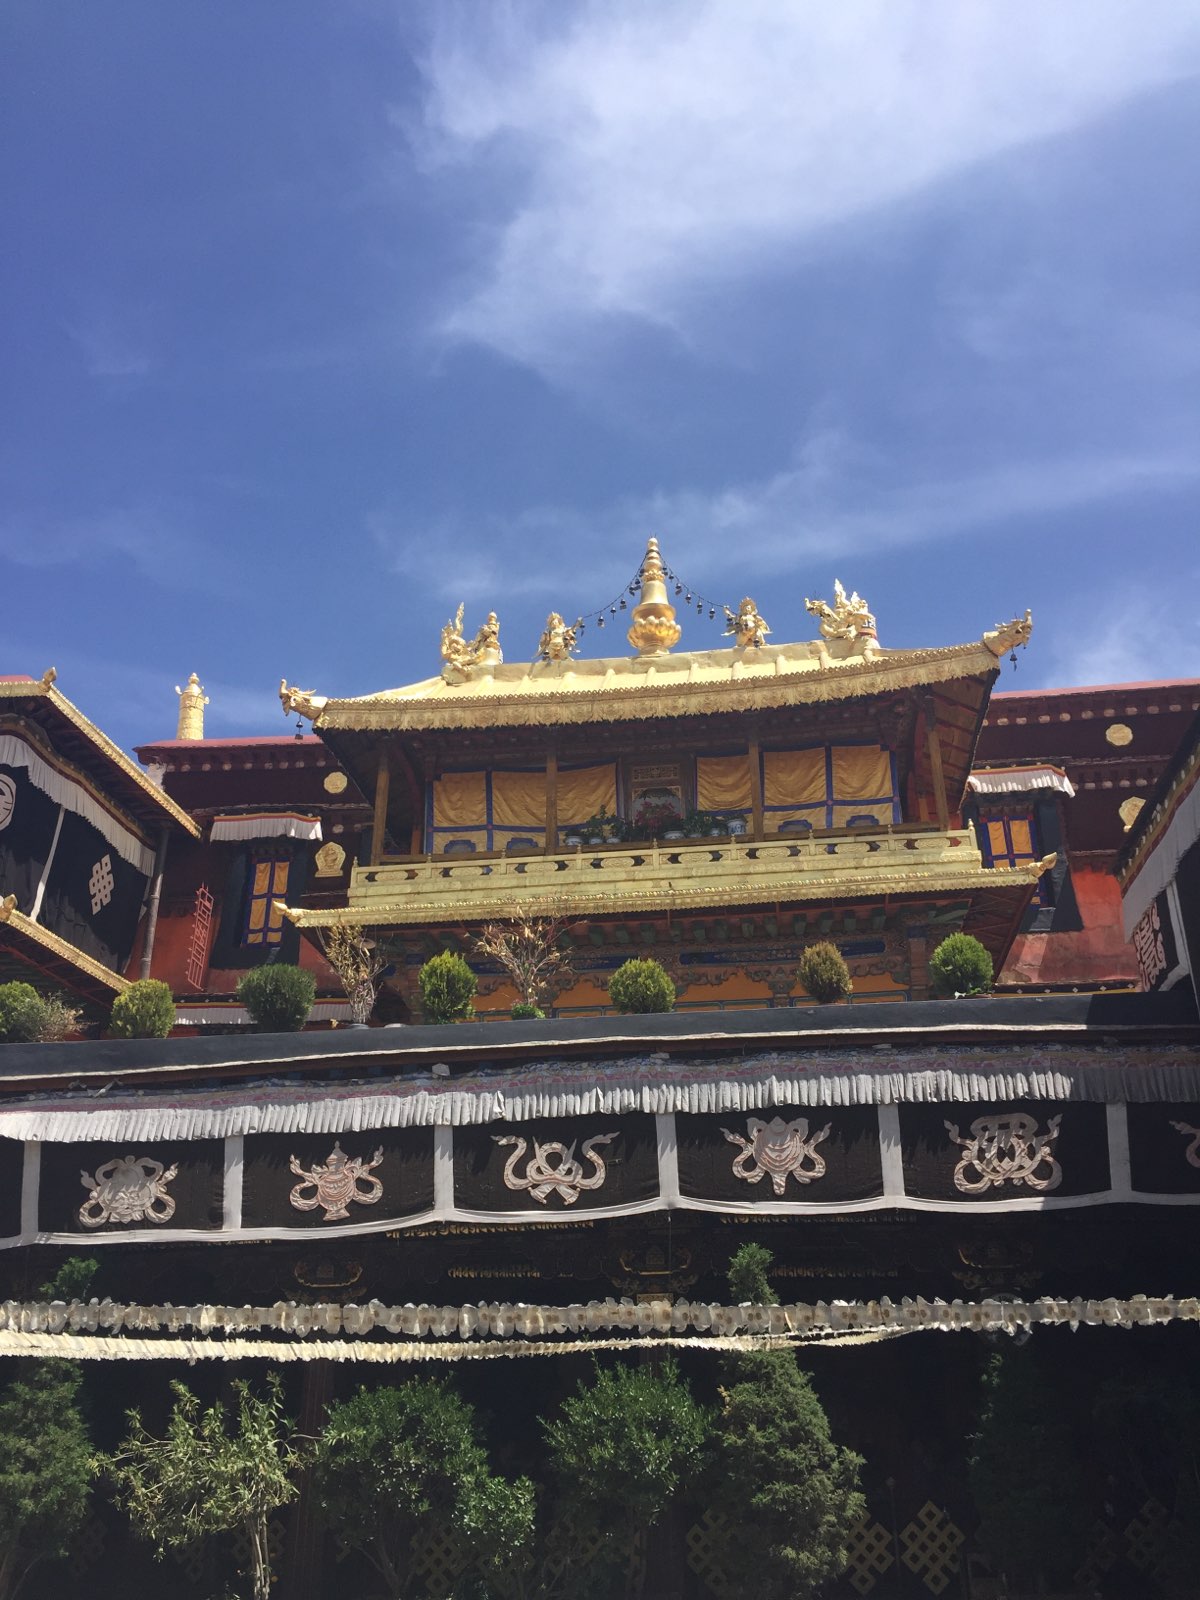 大昭寺，又名“祖拉康”、“觉康”（藏语意为佛殿），位于拉萨老城区中心，